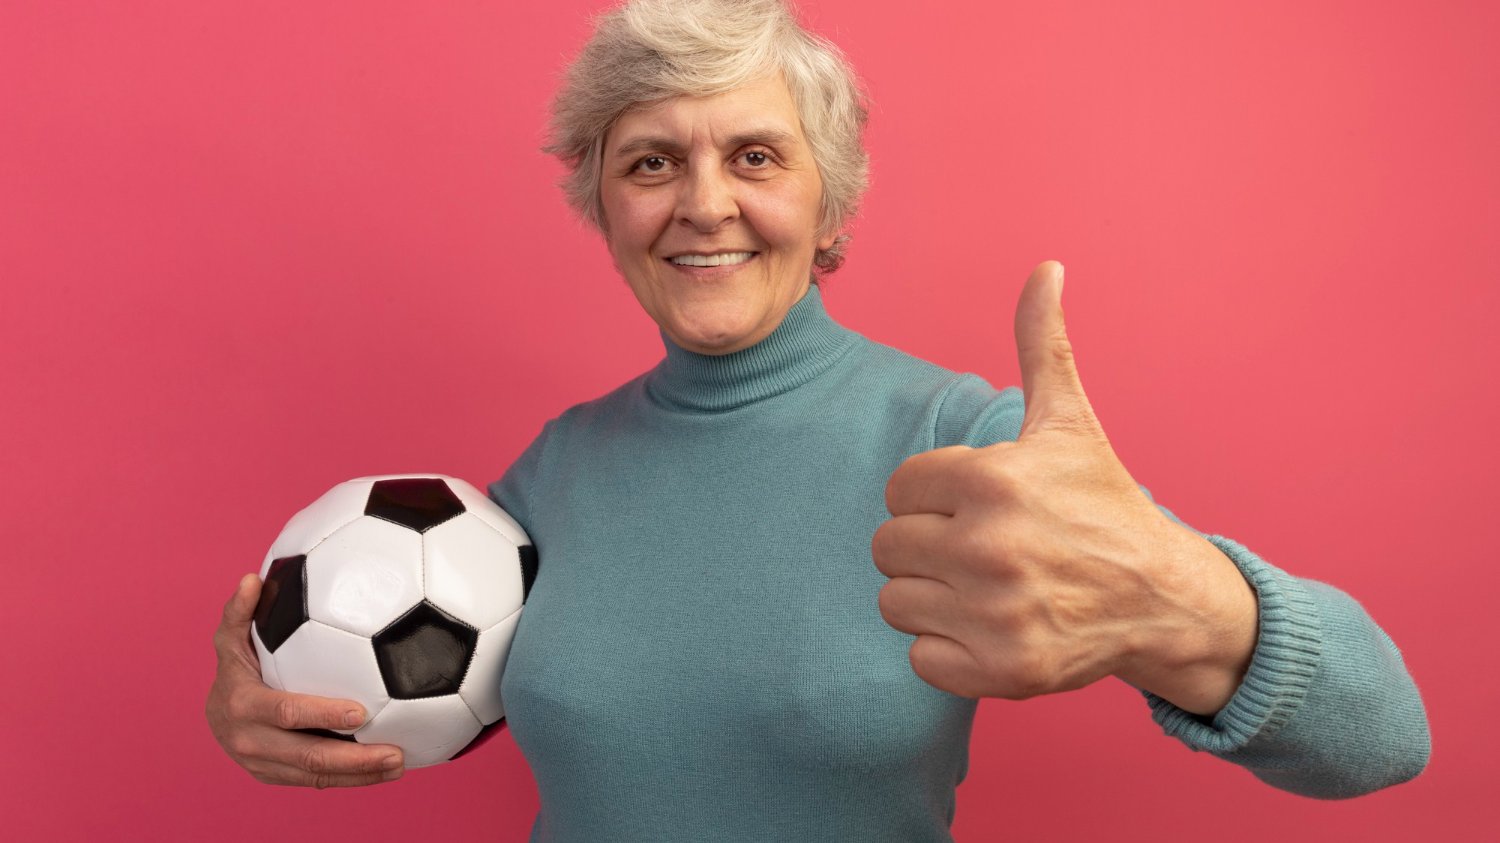 Mulher idosa segurando uma bola de futebol e fazendo joia com a mão